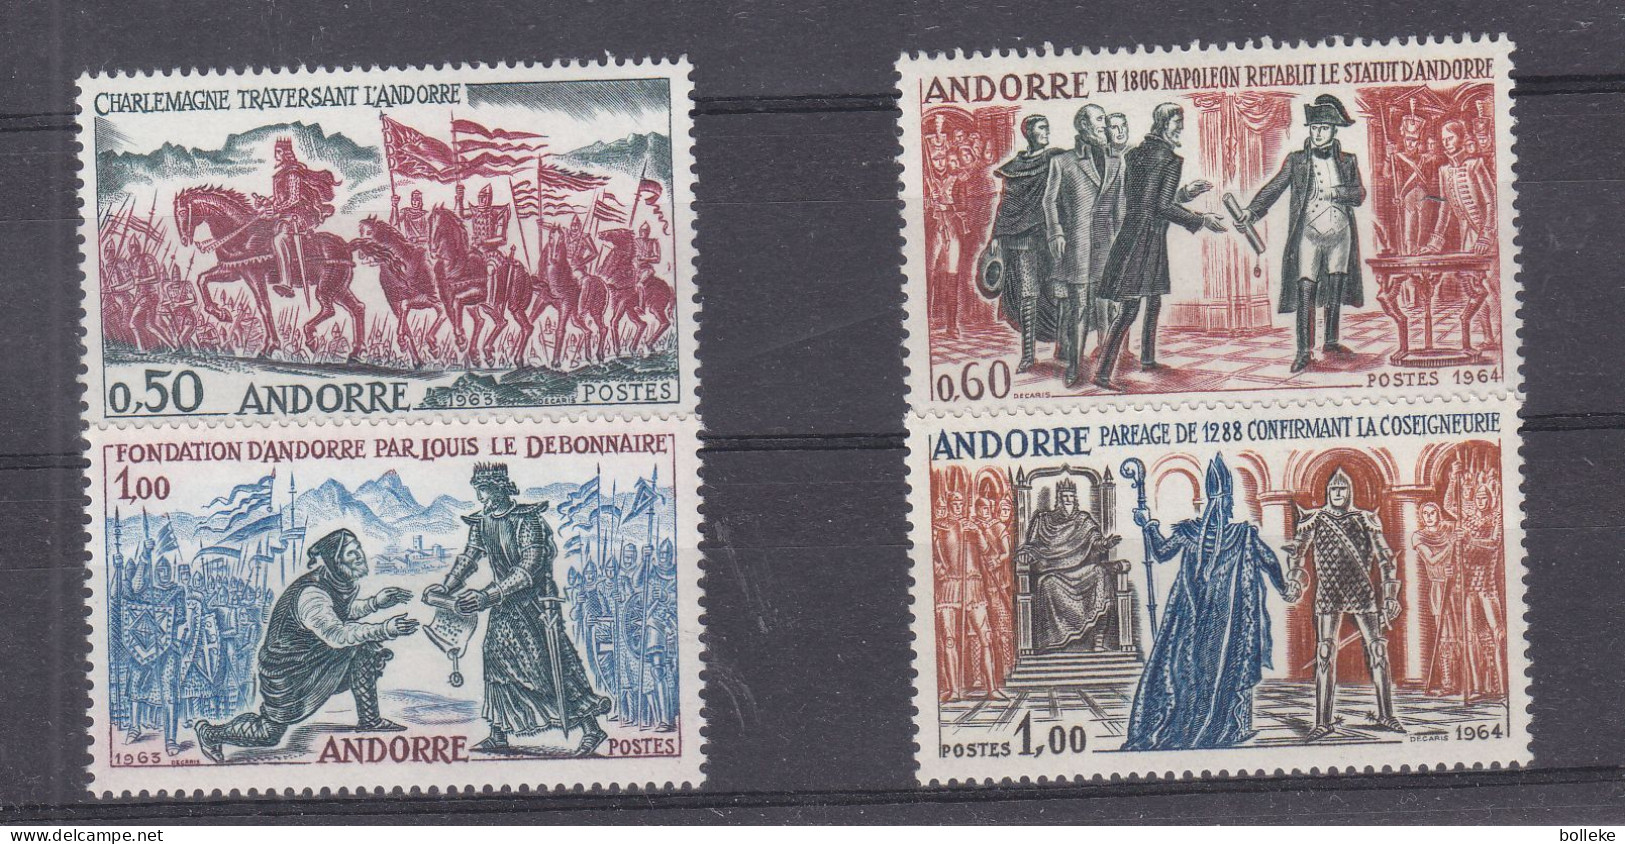 Napoleon - Andorre Français - Yvert 167 / 70 ** - Drapeaux - Valeur 85,00 Euros - - Unused Stamps